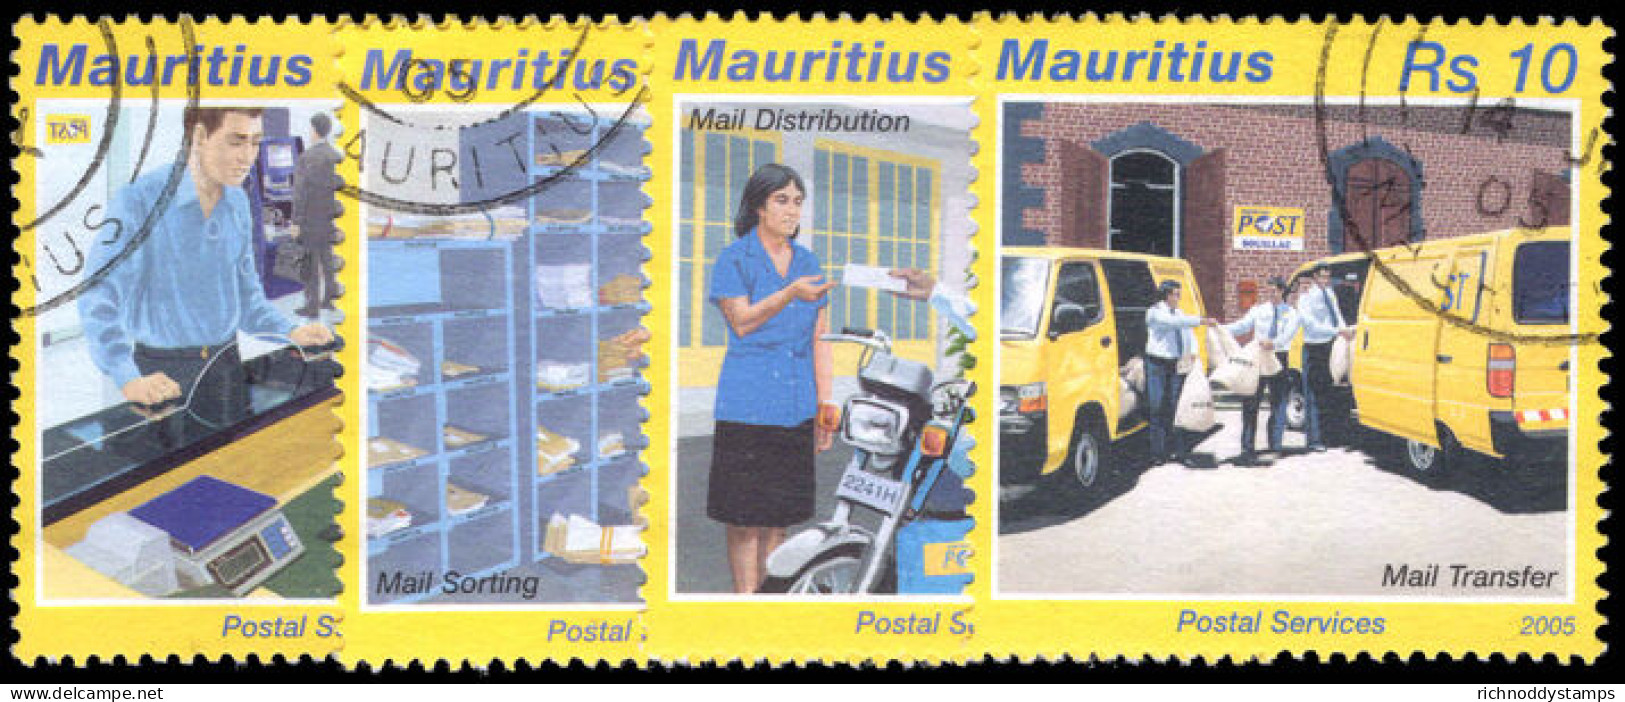 Mauritius 2005 Postal Services Fine Used. - Mauritius (1968-...)